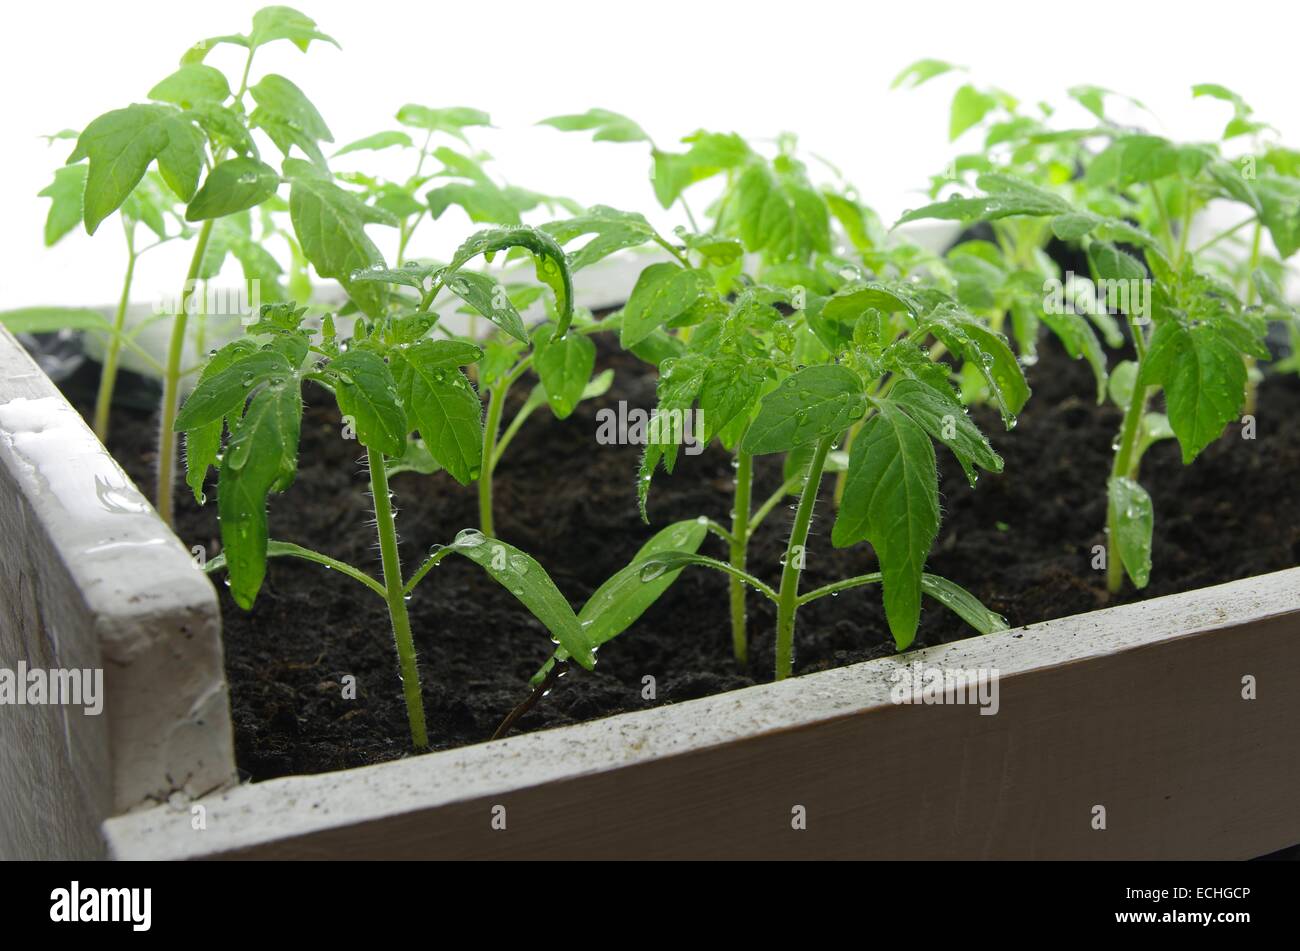 Les jeunes plantules de tomate sur un fond blanc Banque D'Images